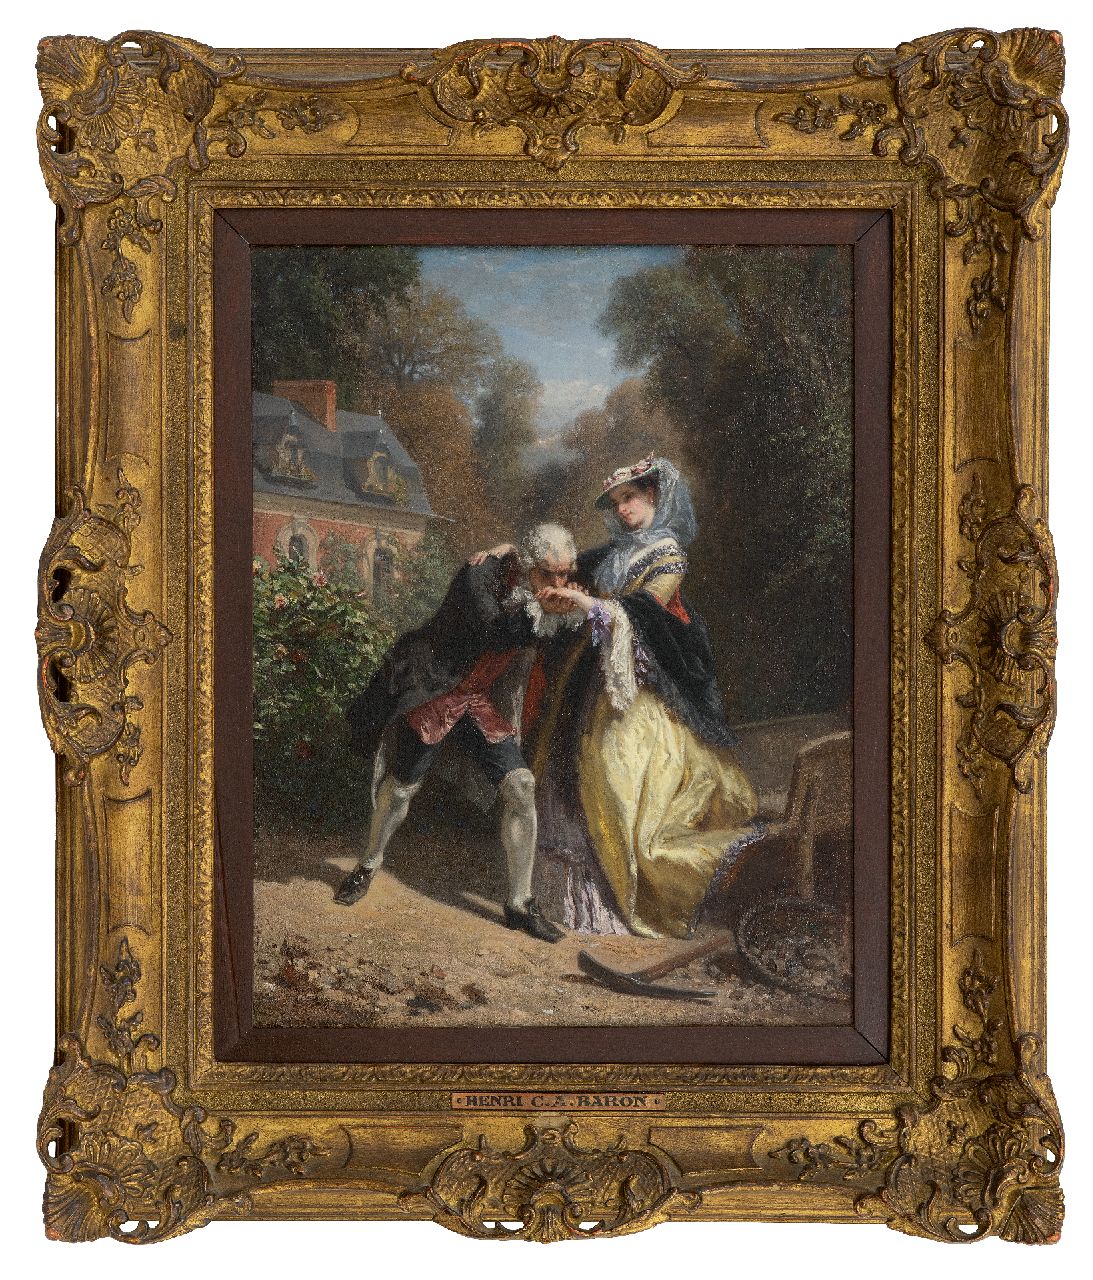 Baron H.C.A.  | 'Henri' Charles Antoine Baron | Gemälde zum Verkauf angeboten | Der Handkuss, Öl auf Tafel 36,2 x 28,3 cm, Unterzeichnet m.r.